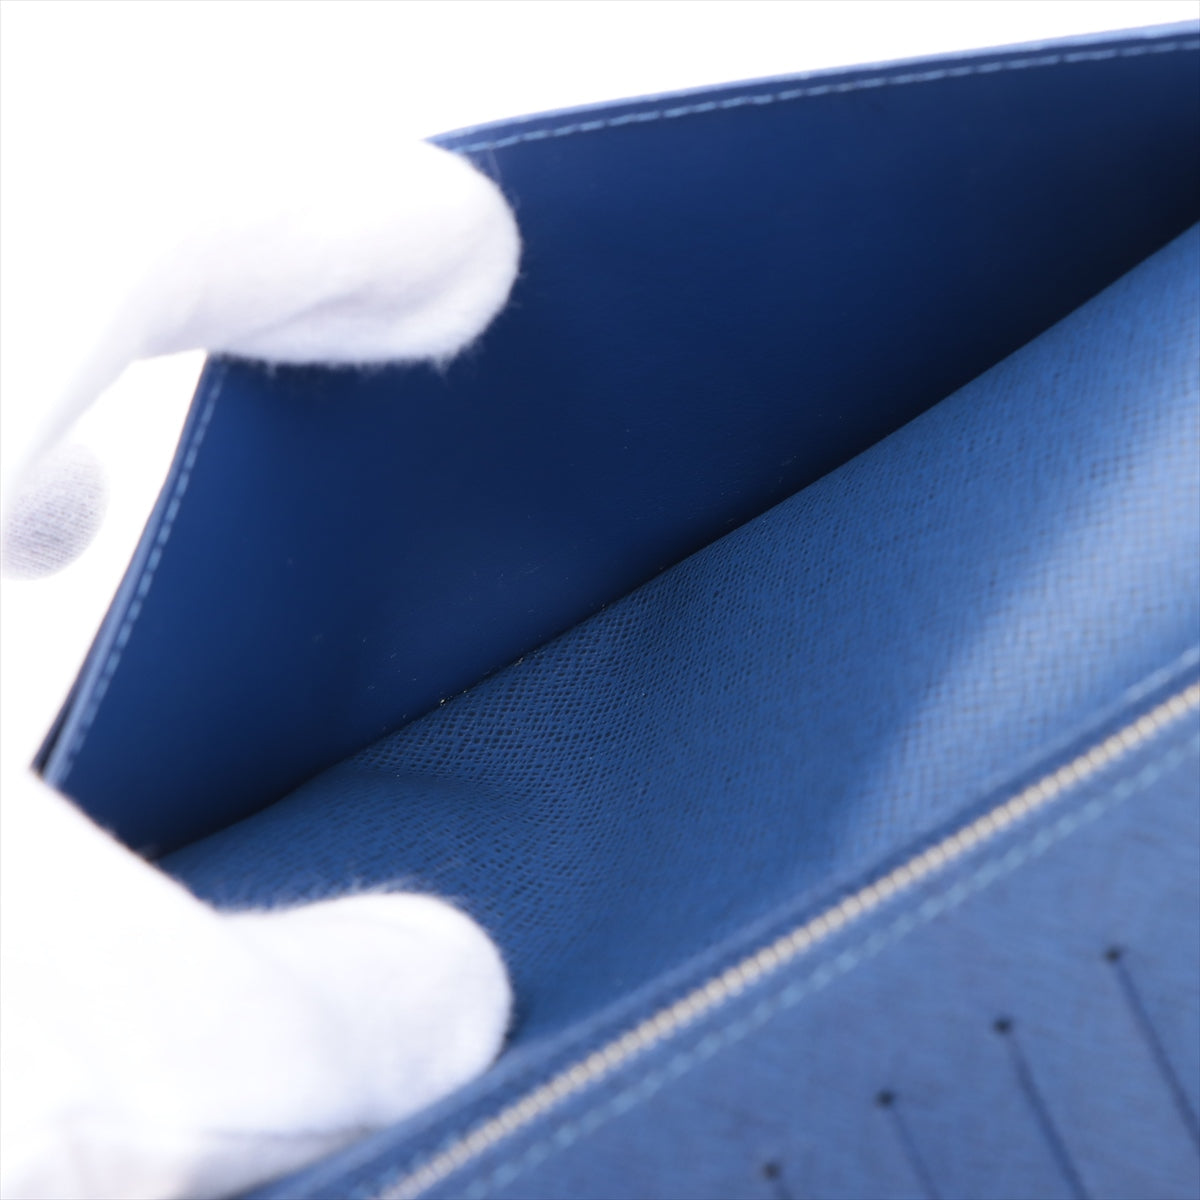 ルイヴィトン タイガラマ ポルトフォイユ･ブラザ M30297 ブルー 財布